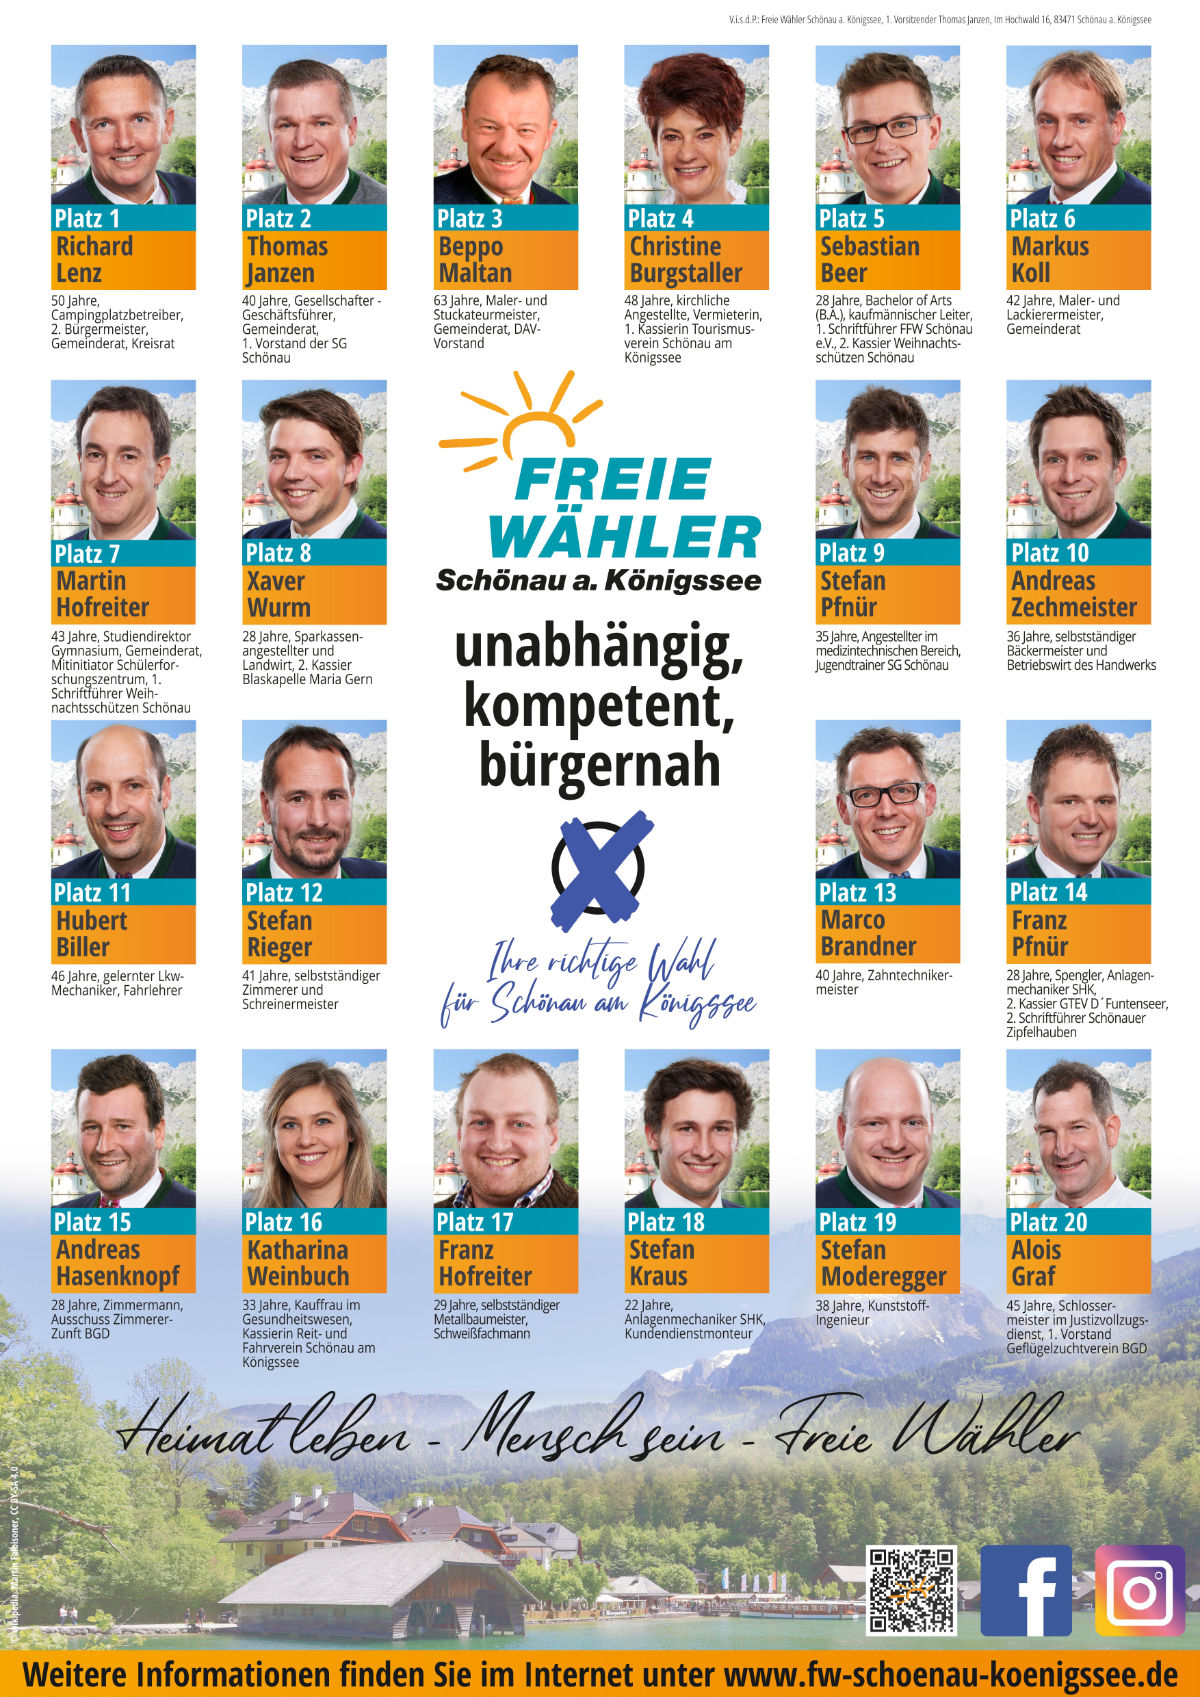 Kandidaten der FW Schönau am Königssee